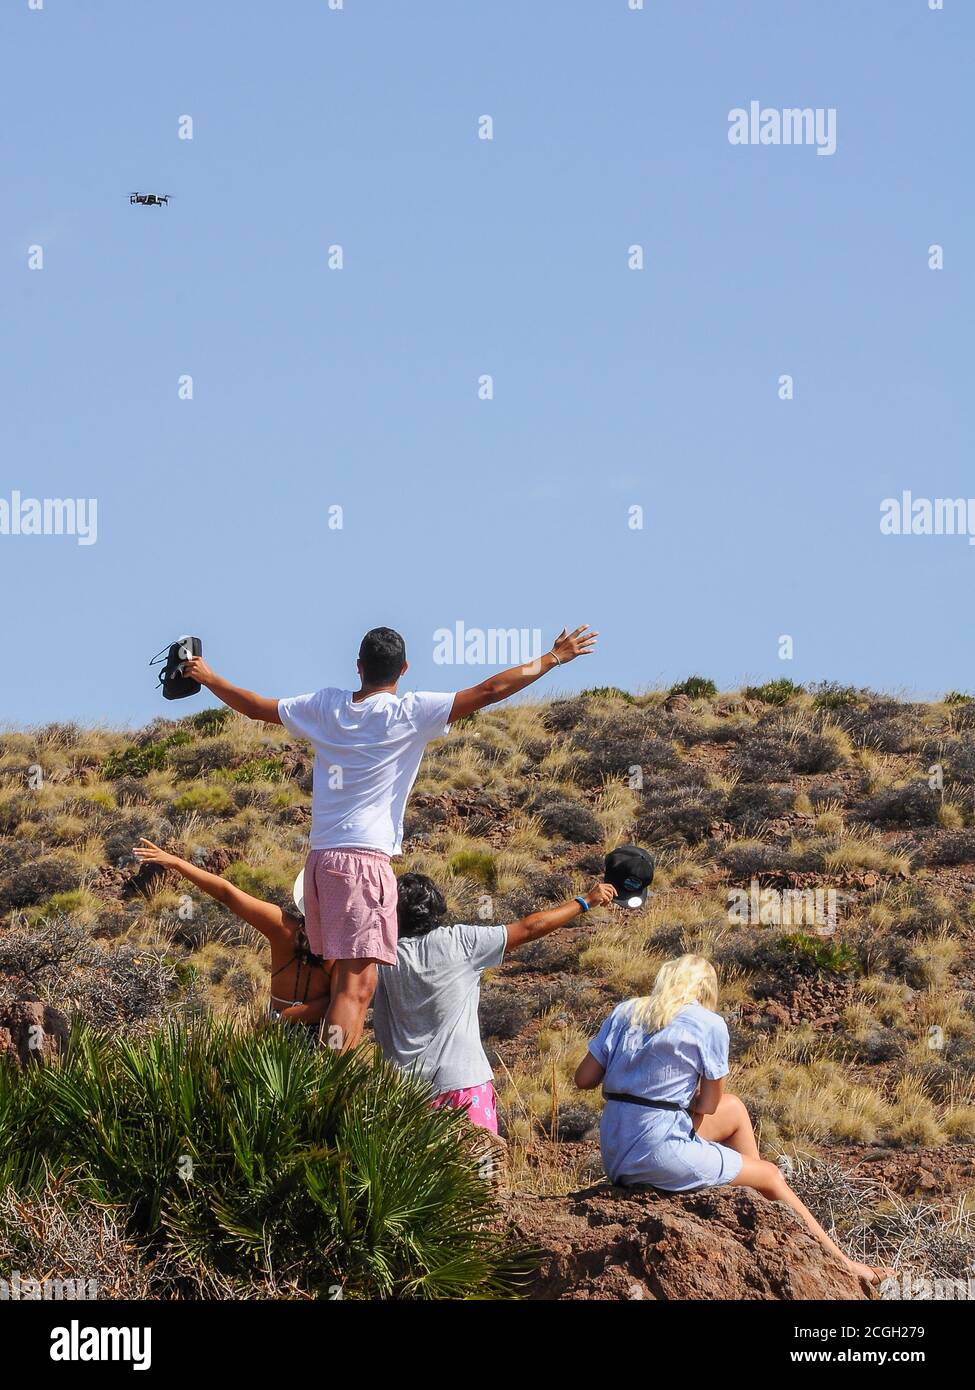 Groupe d'amis prenant un selfie et filmant eux-mêmes avec un drone volant à la campagne Banque D'Images